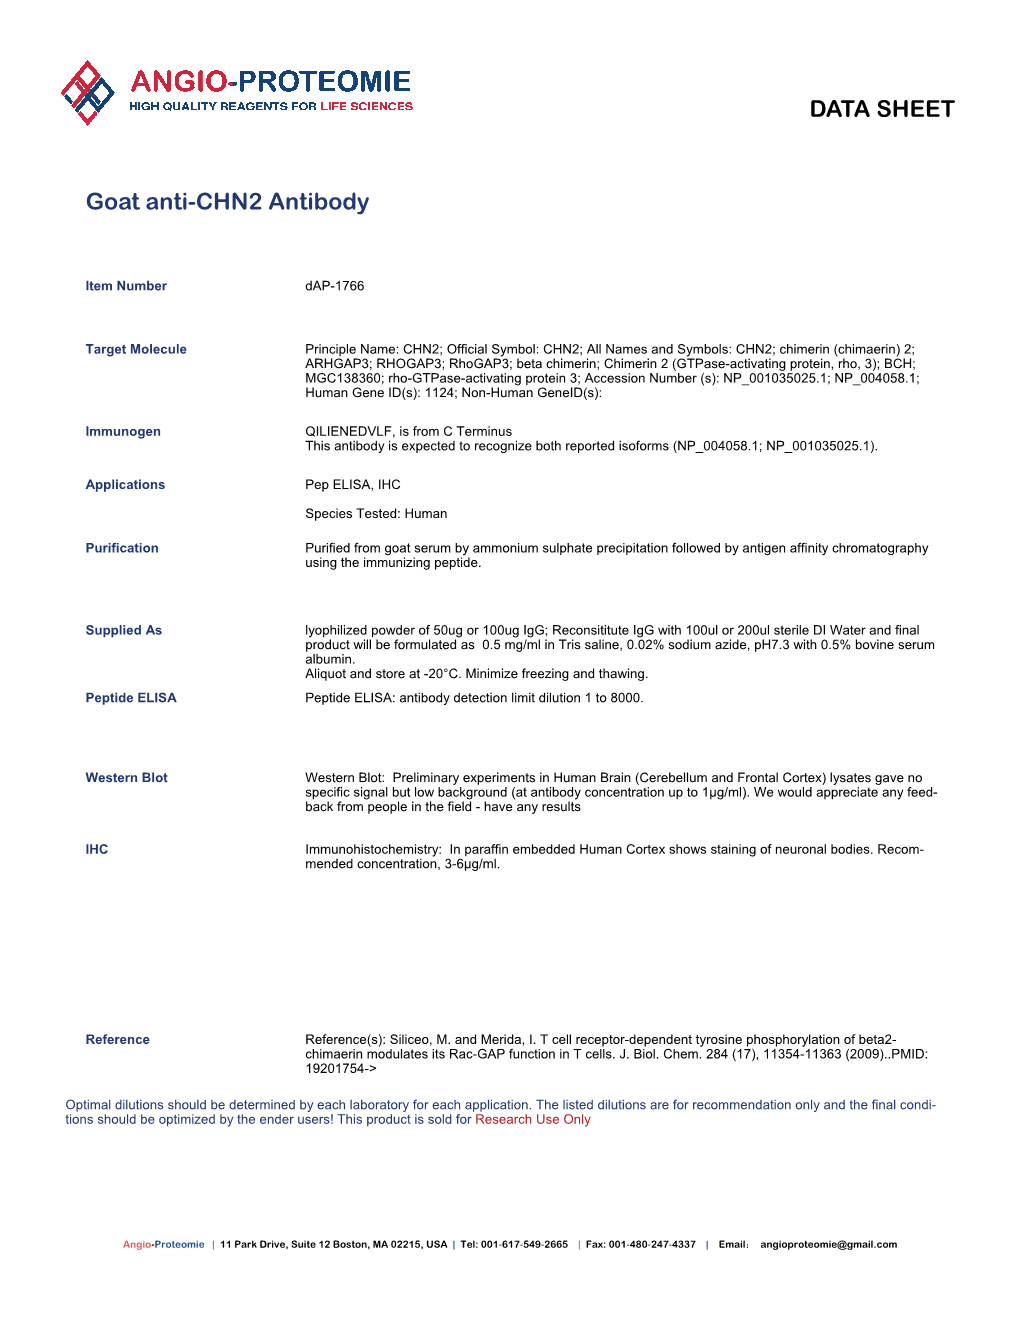 Dap-1766 Goat Anti-CHN2 Antibody-PDF.Pdf